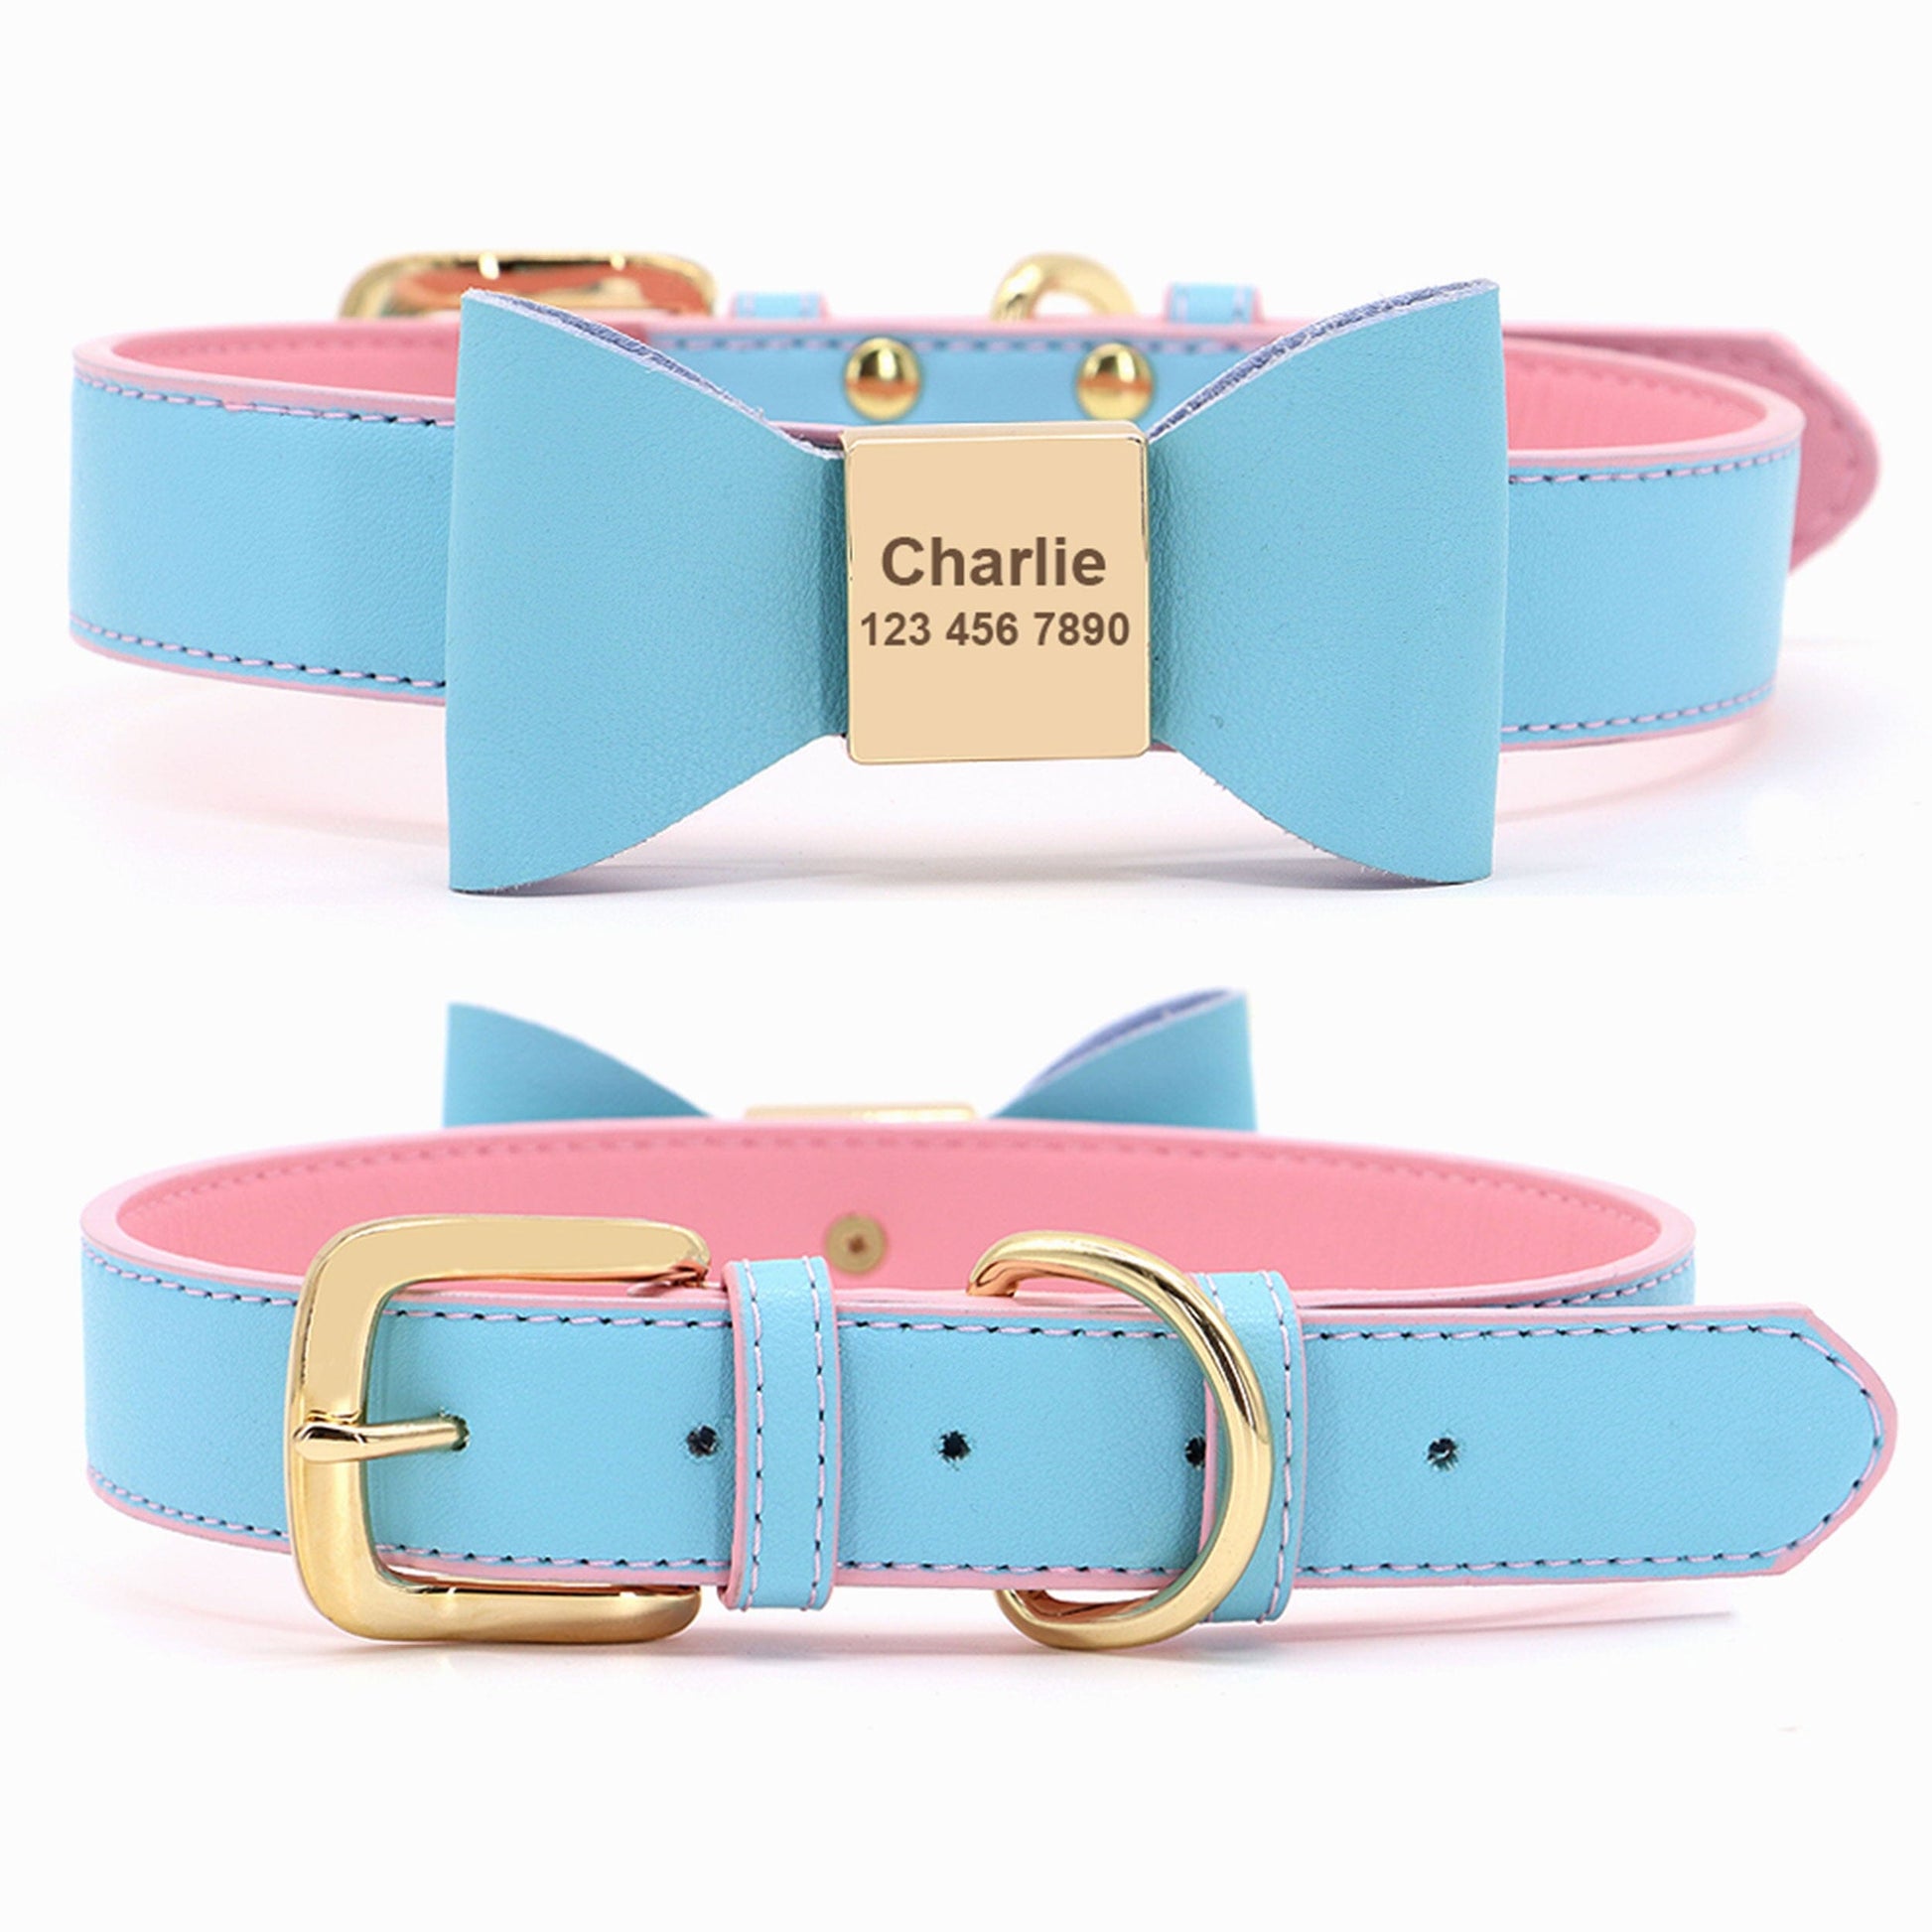 Premium Echtleder Hundehalsband mit Personalisierung | Bowknot Halsband Mein Shop Hellblau/Rosa XS 